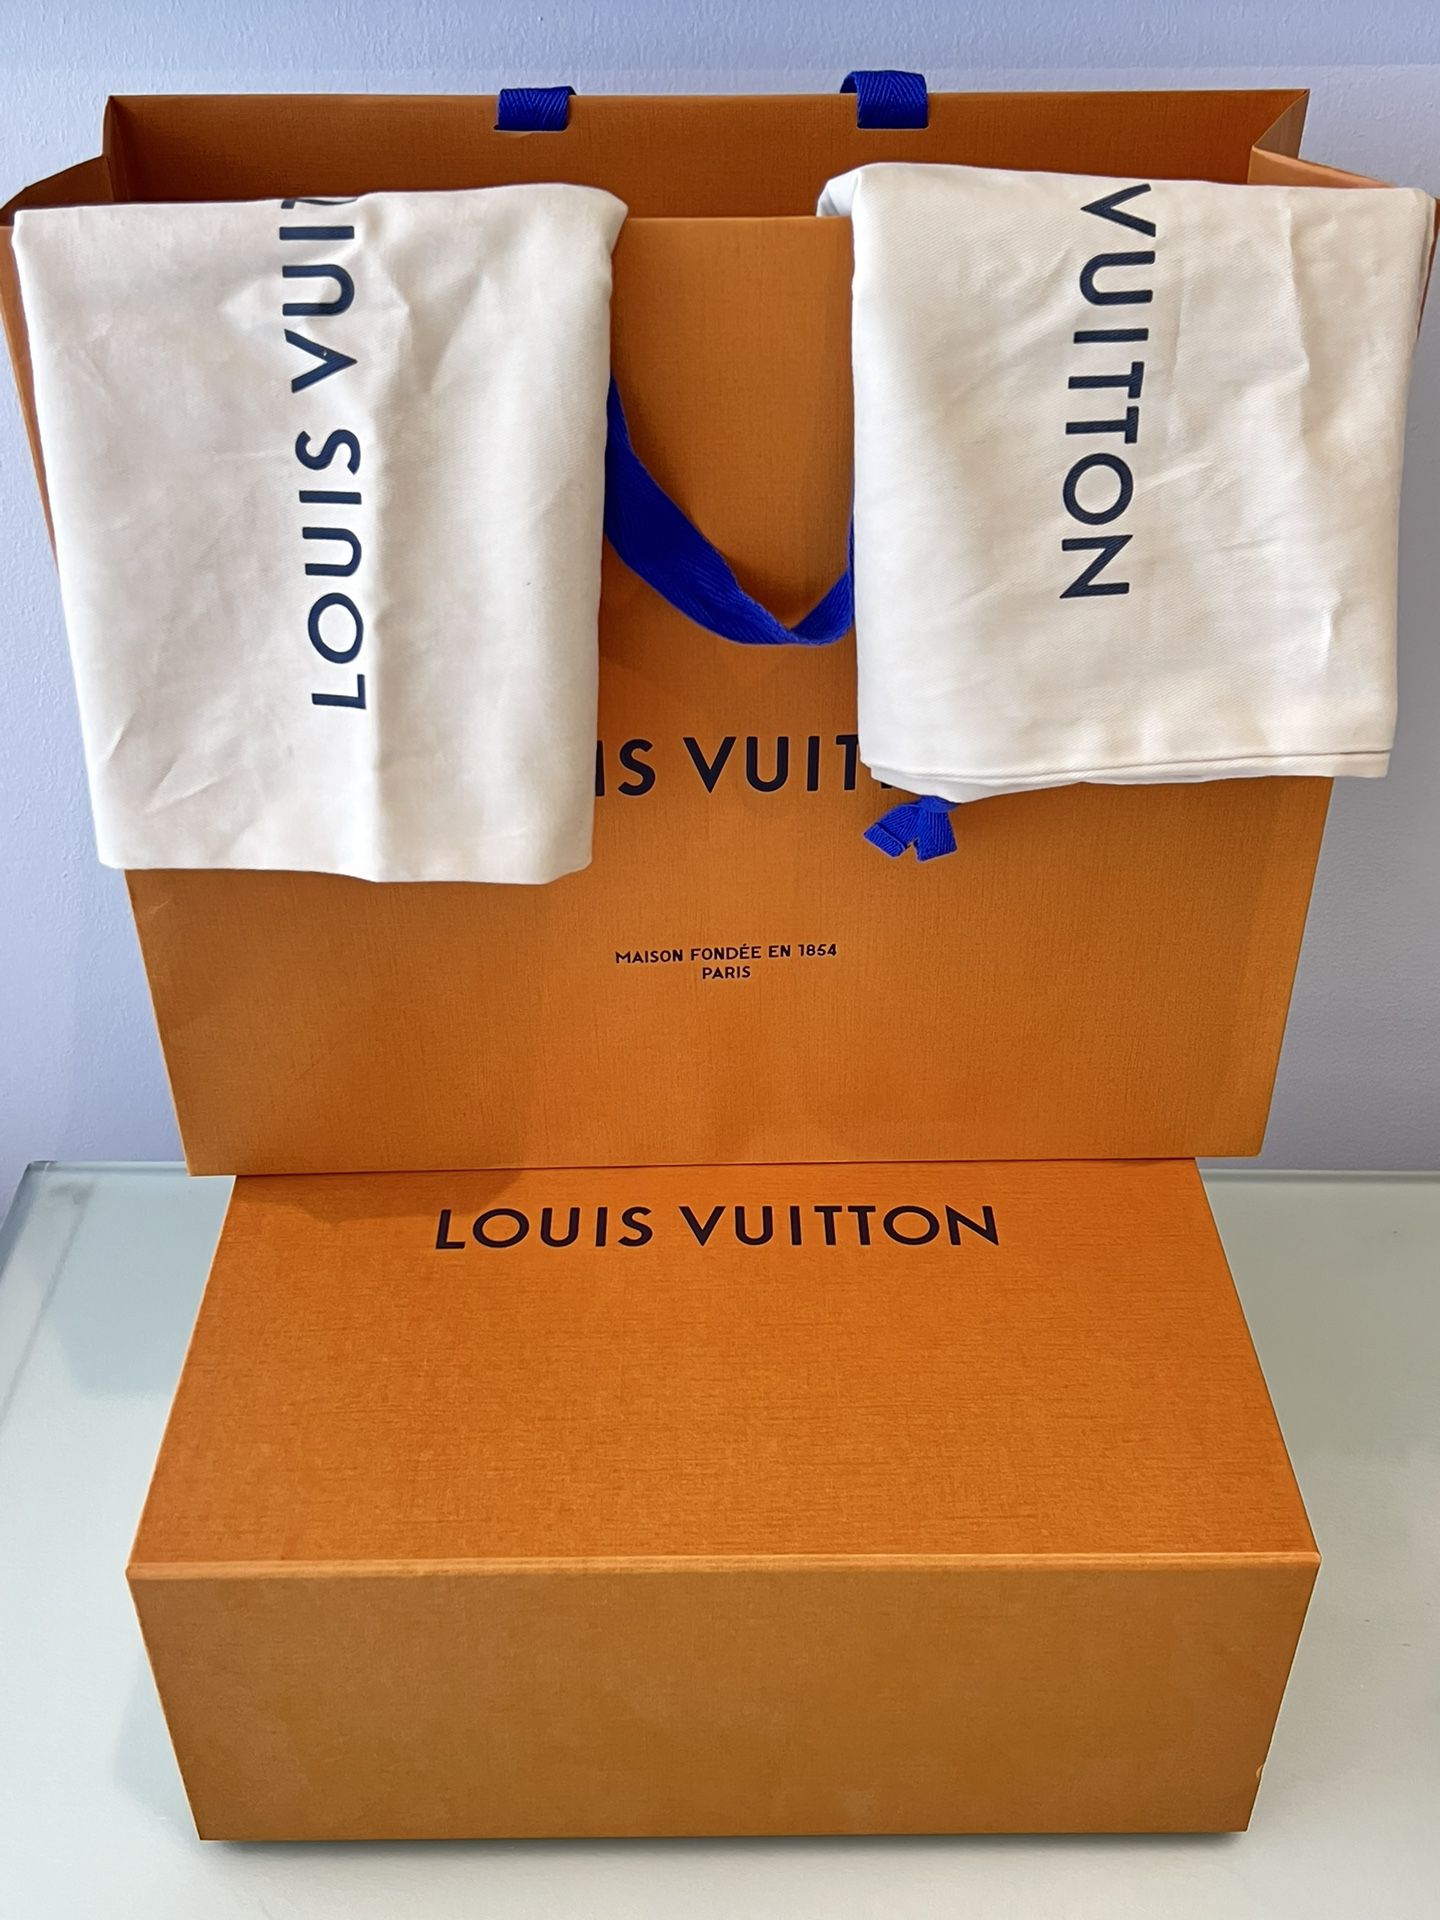 LOUIS VUITTON X Virgil Abloh 2054 Capsule MILENIUM Blue/Red Sneakers 9 w/box